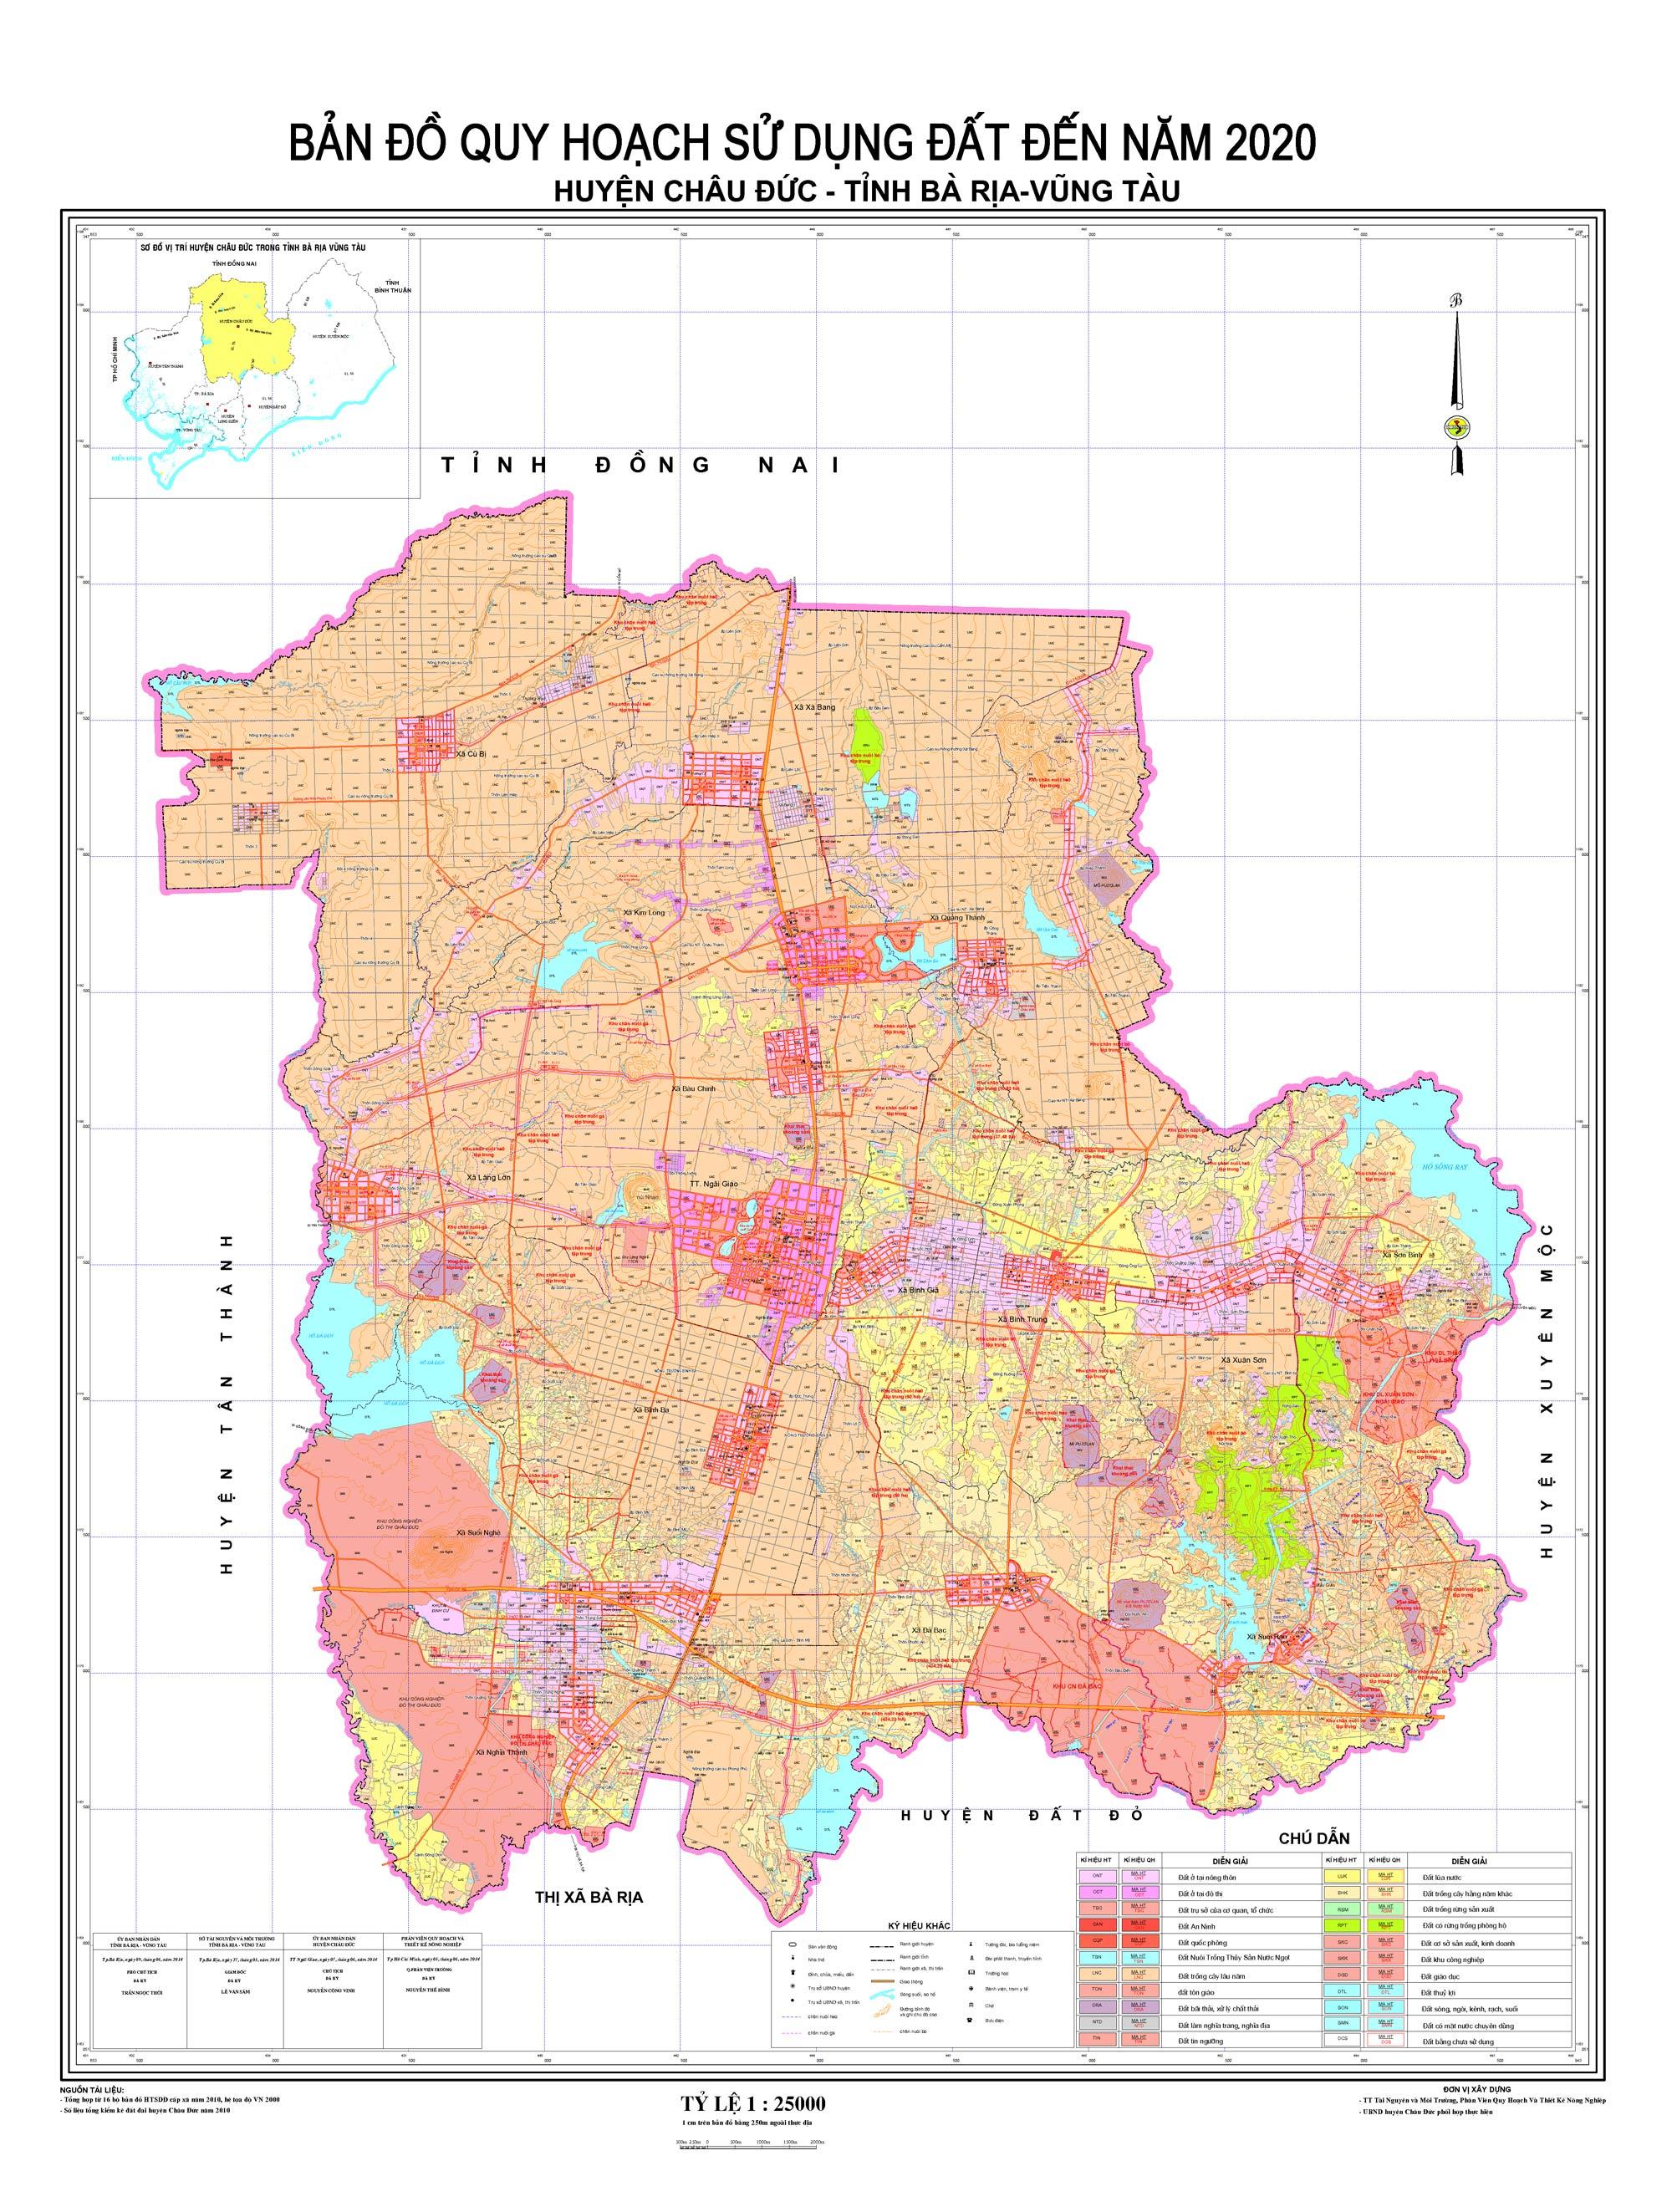 Bản đồ sử dụng đất huyện Châu Đức 2024 cung cấp thông tin chính xác về tình hình sử dụng đất trong khu vực. Đây là công cụ hữu ích để giúp các nhà đầu tư, doanh nghiệp và cá nhân có kế hoạch phát triển bền vững và hiệu quả cho đất đai của mình.